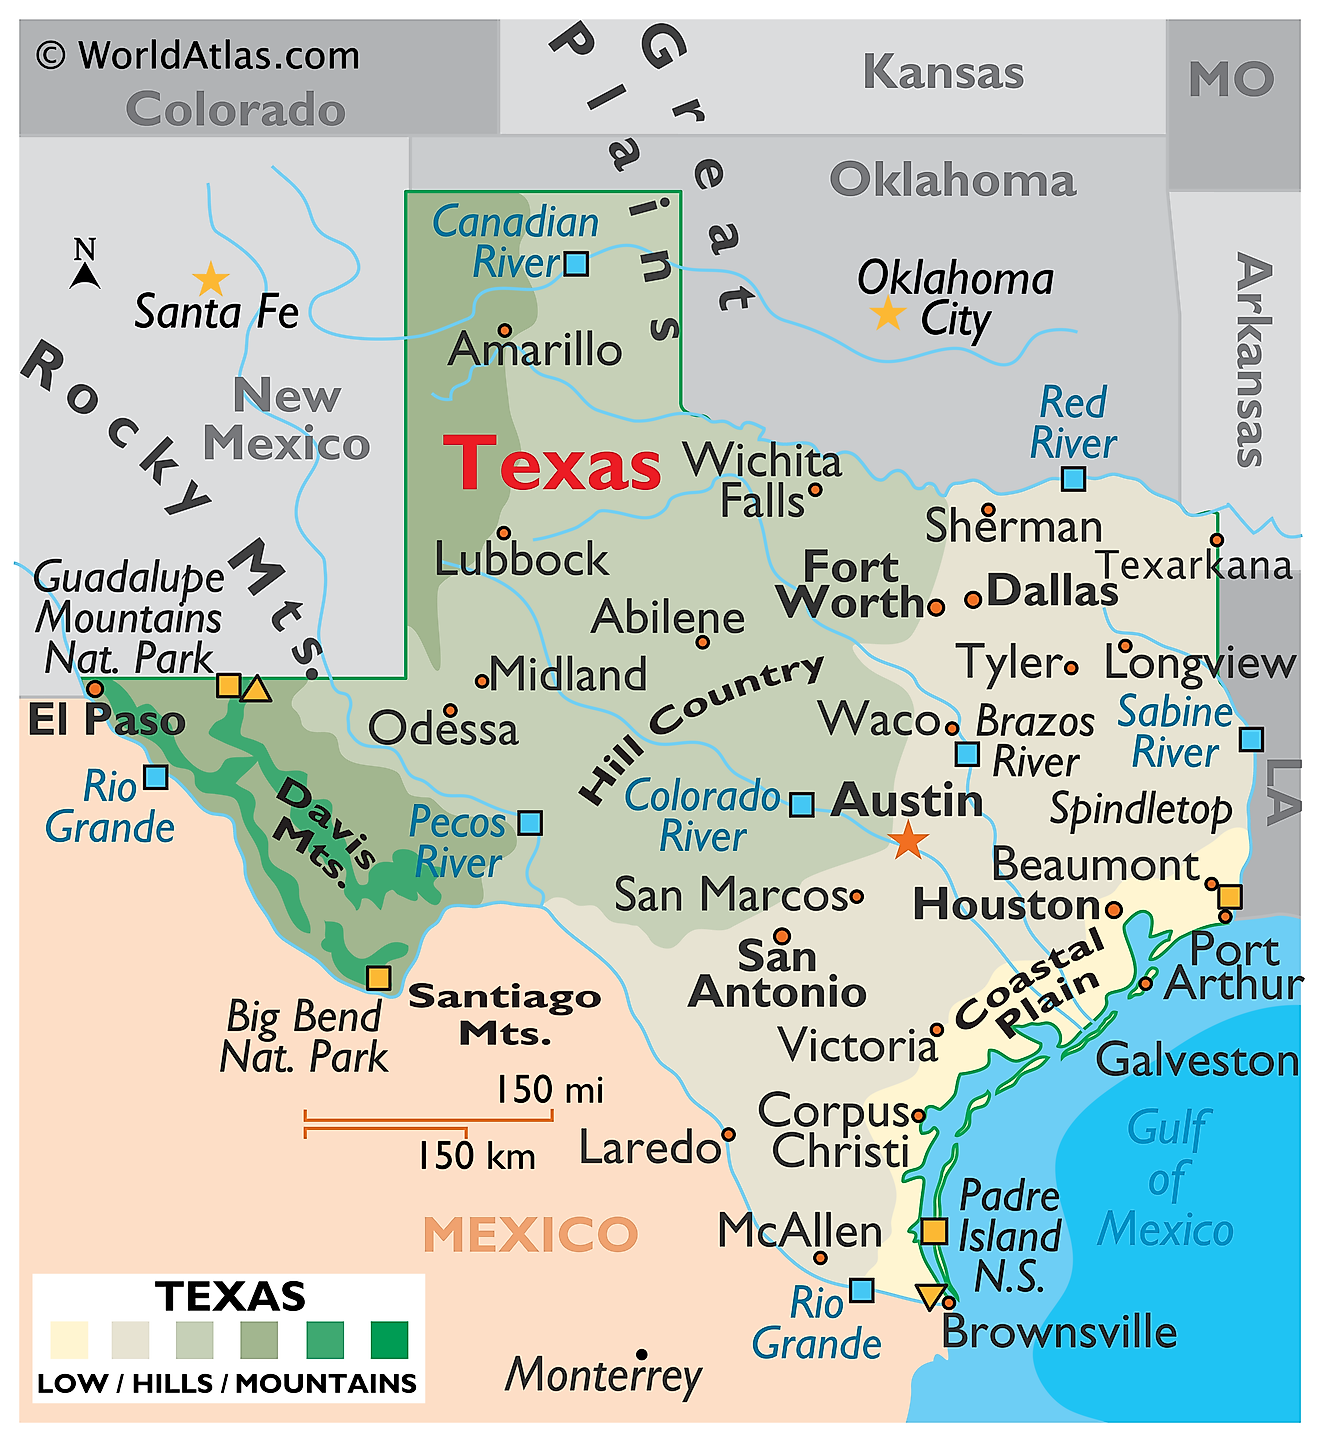 Álbumes 104+ Foto Mapa De Texas Con Ciudades Y Pueblos Alta Definición ...